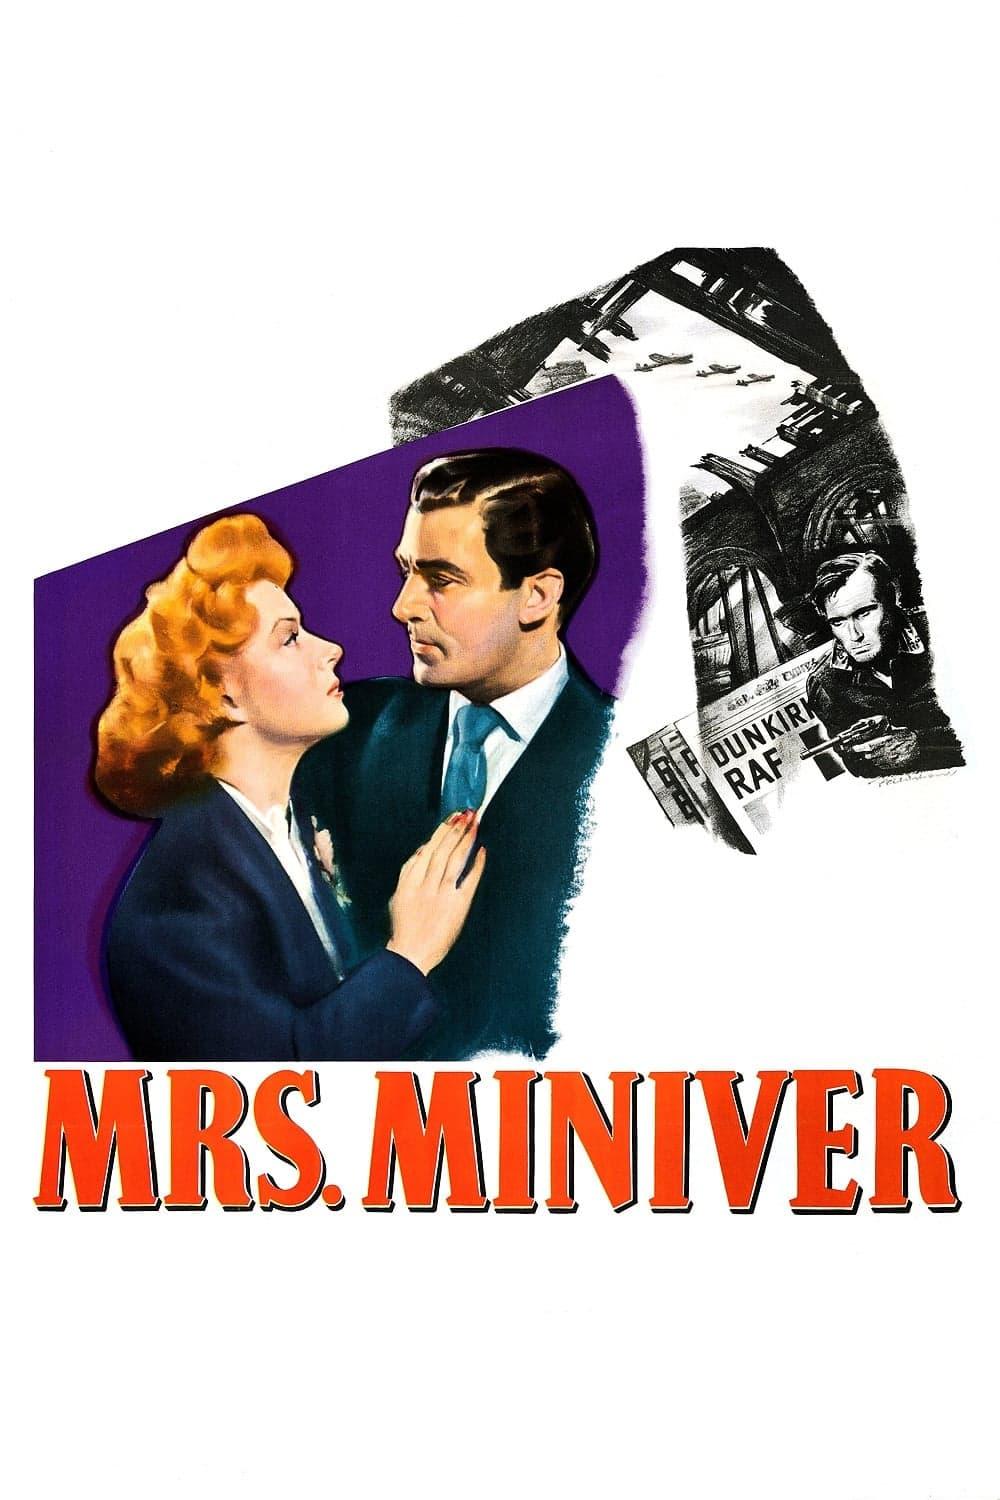 Mrs. Miniver poster